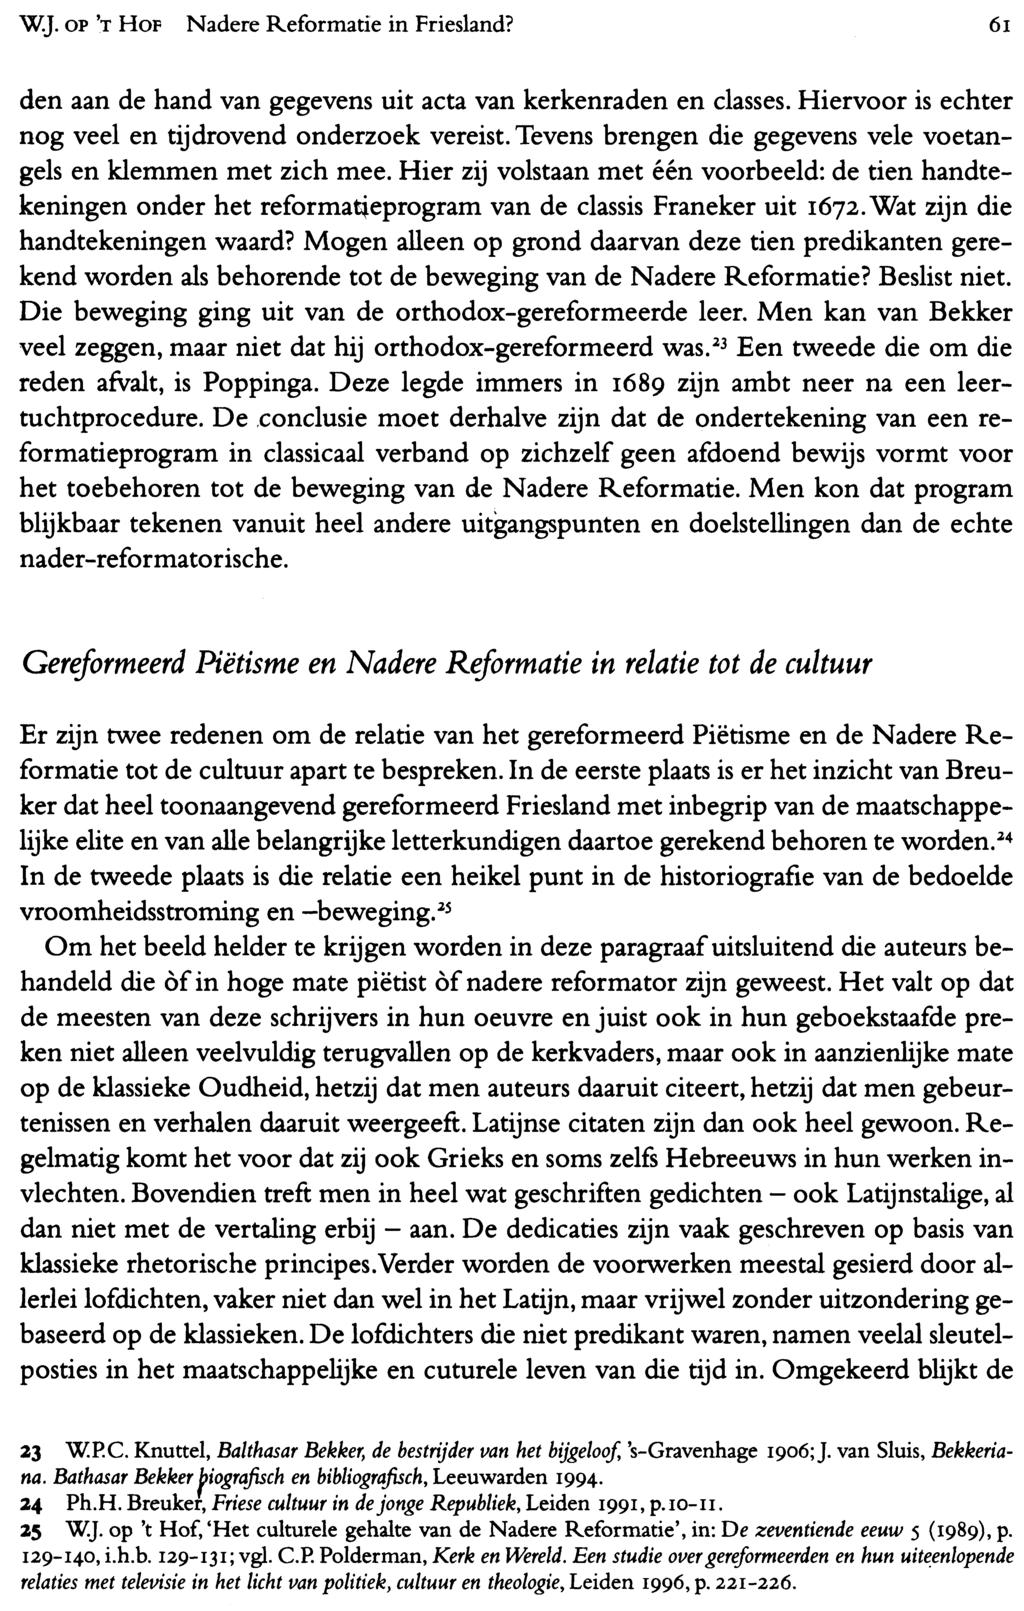 WJ. OP 'T HOF Nadere Reformatie in Friesland? 61 den aan de hand van gegevens uit acta van kerkenraden en classes. Hiervoor is echter nog veel en tijdrovend onderzoek vereist.